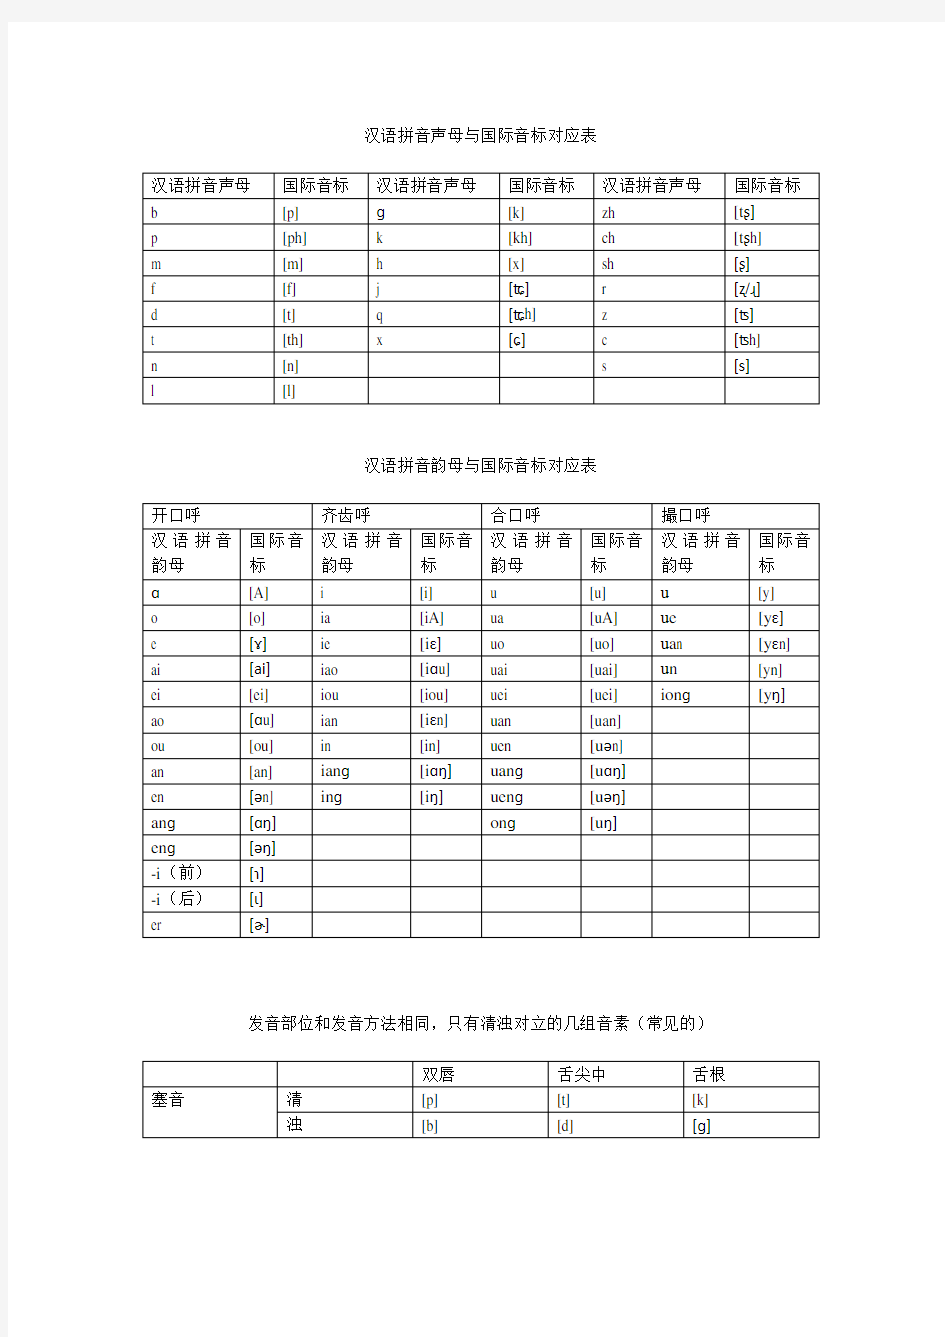 (完整版)汉语拼音与国际音标对应表